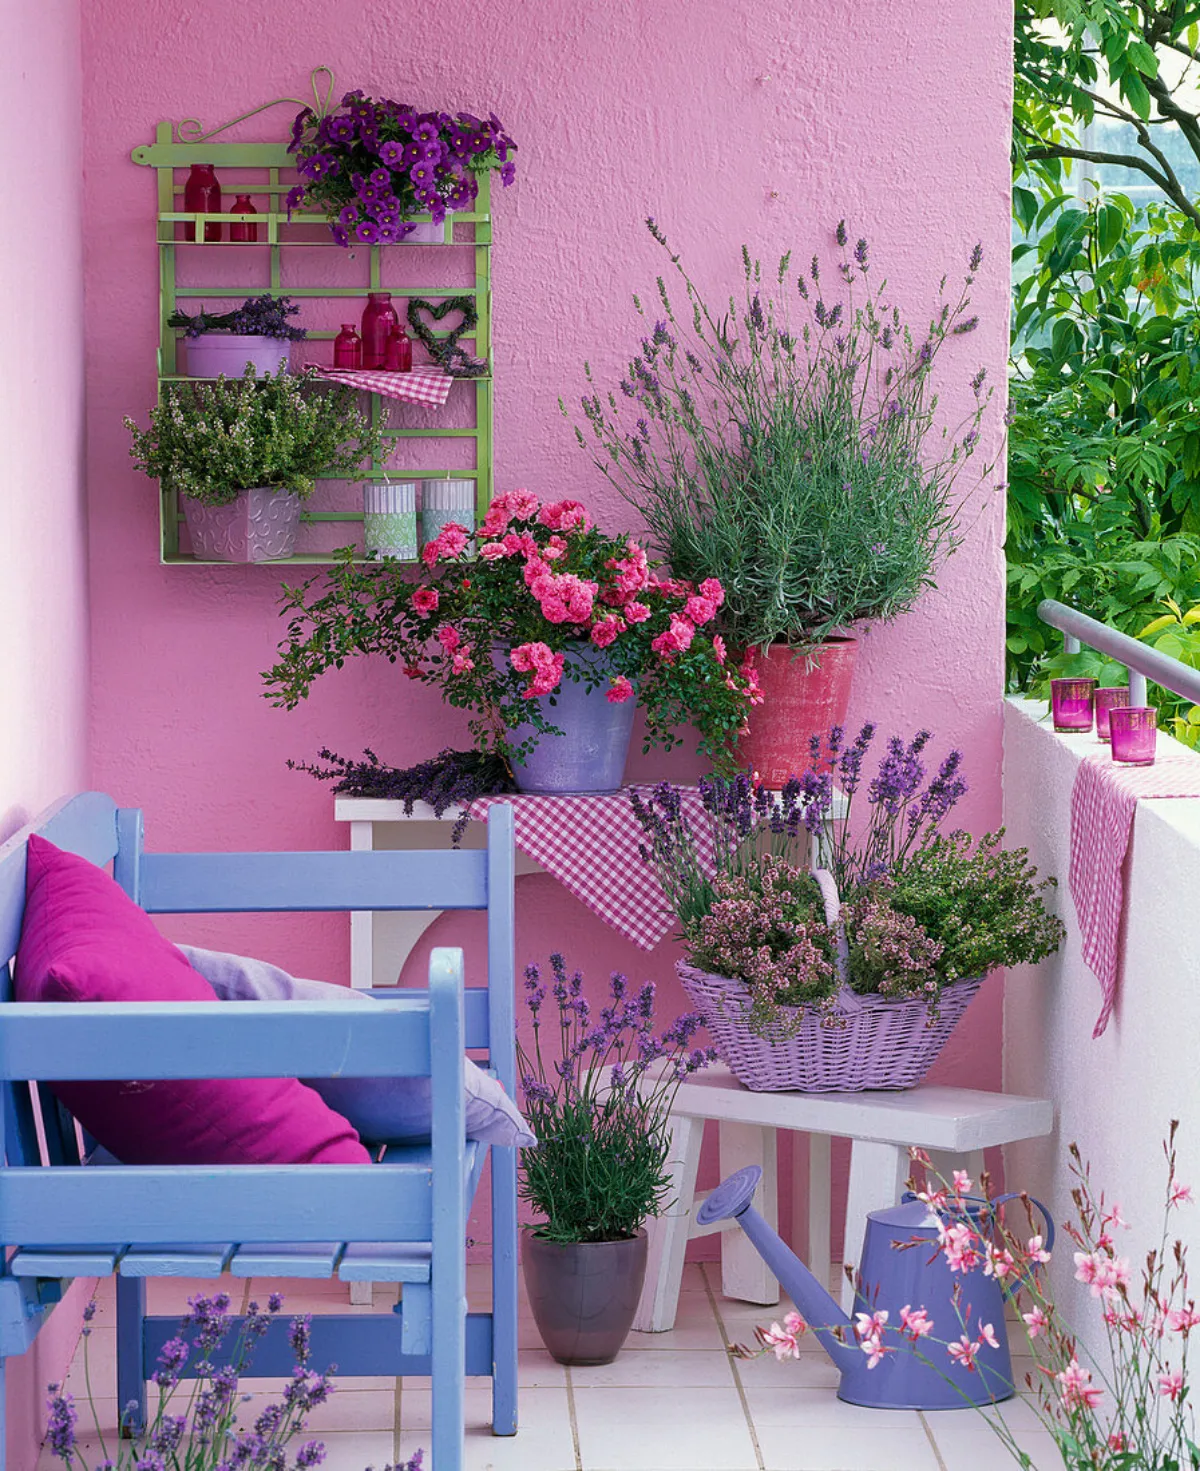 urlaubsflair auf dem balkon rosa wandfarbe lavendel in blumentöpfen möbel in pastellfarben